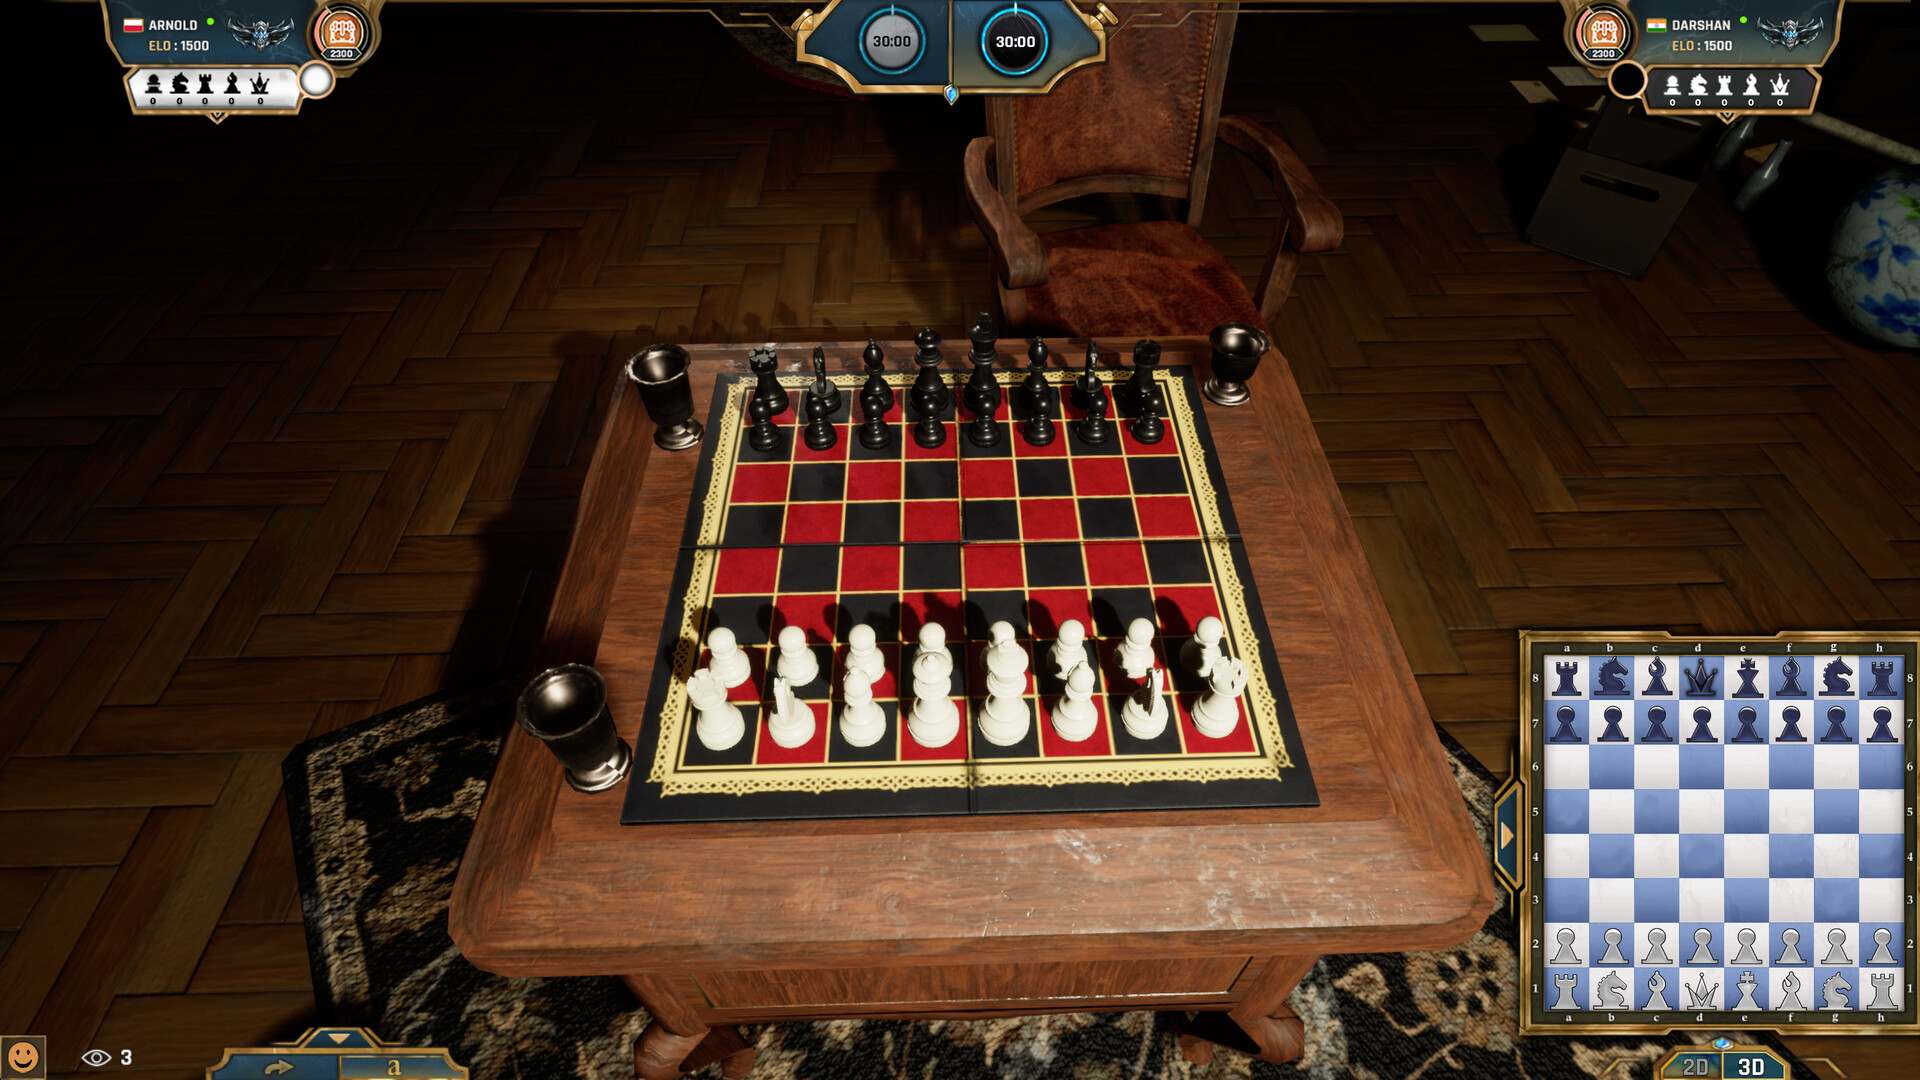 Aplicativo Real Chess para jogar xadrez 3D! 